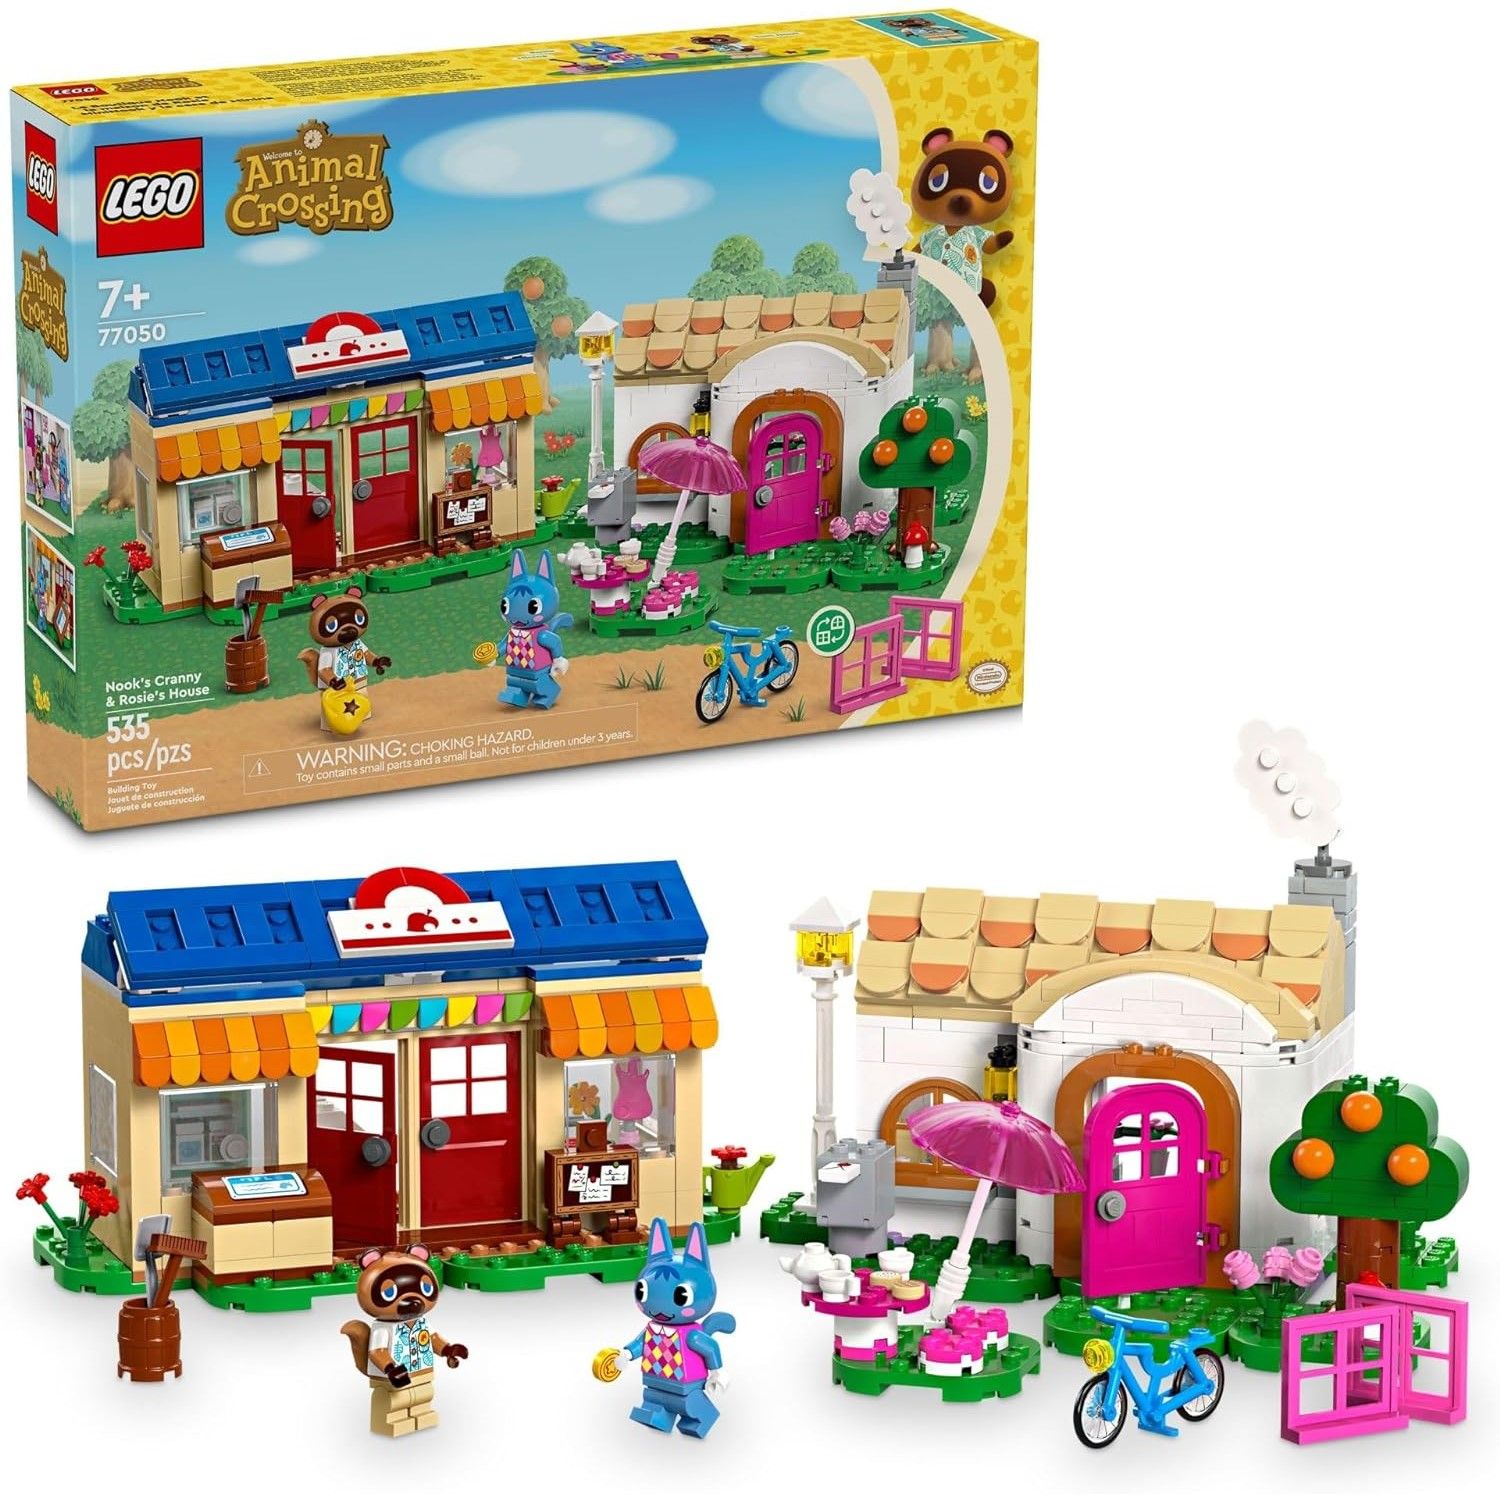 LEGO Animal Crossing Nook’s Cranny & Rosie's House